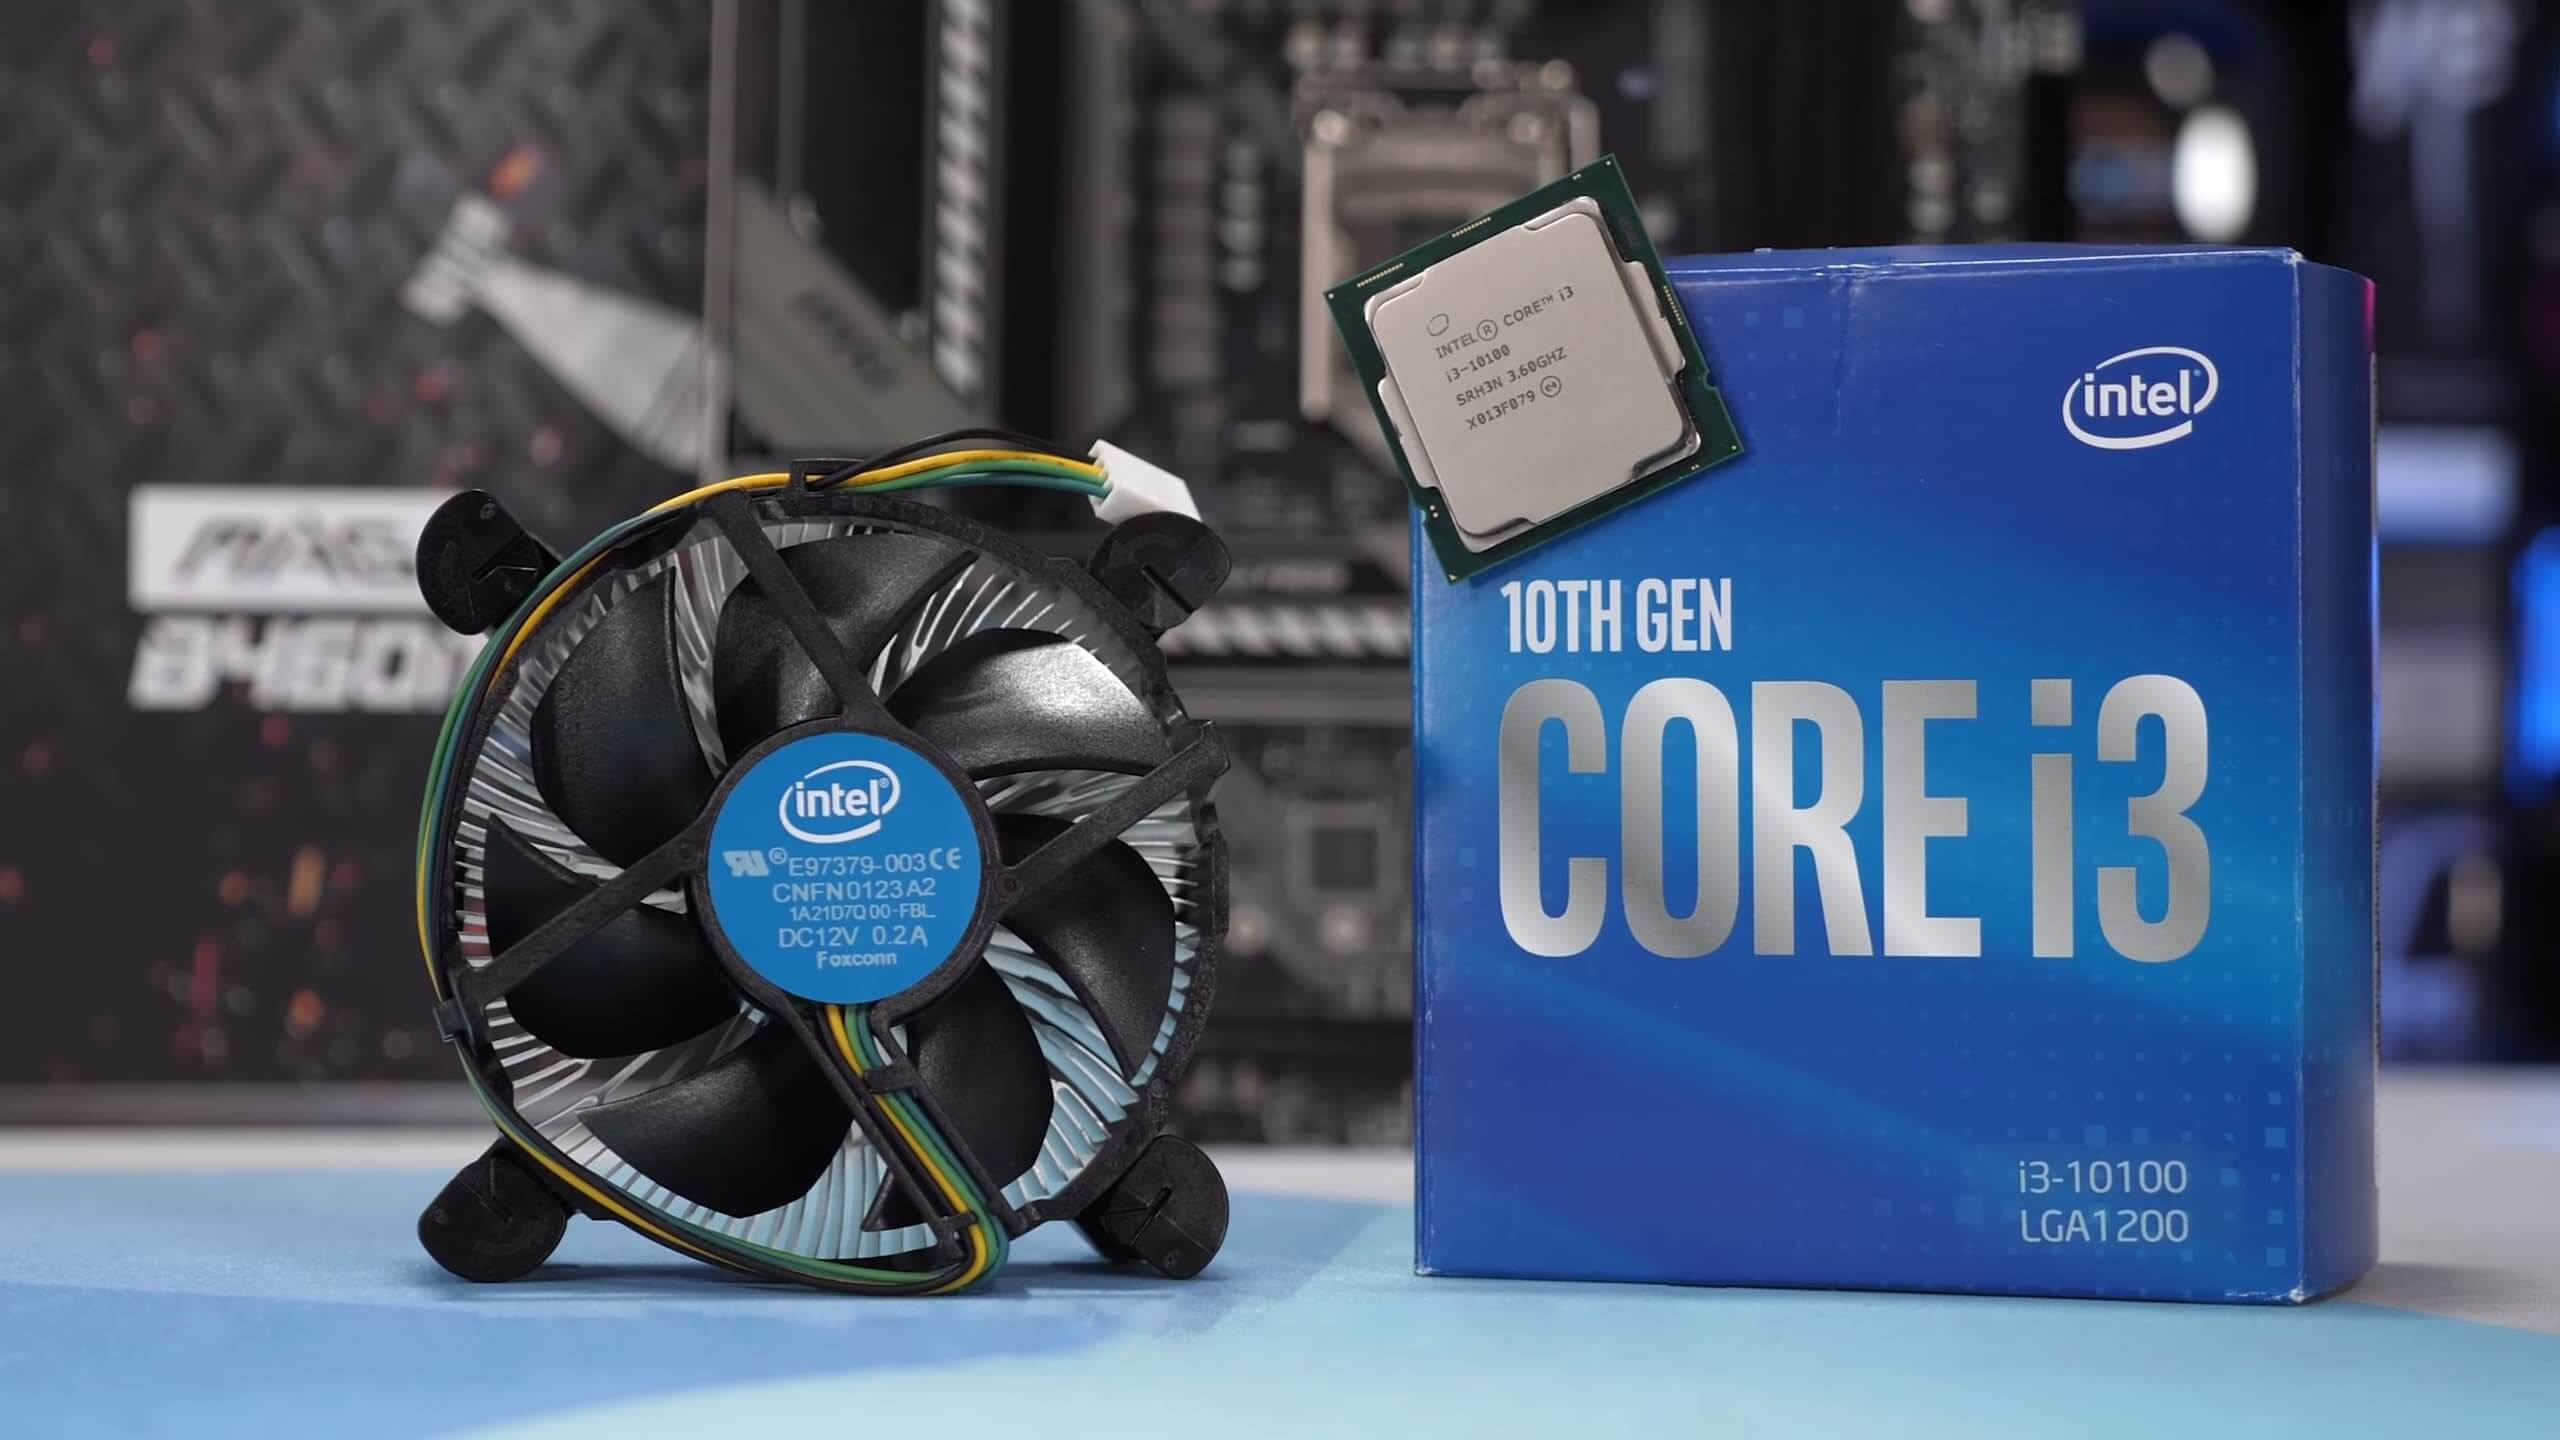 V balení procesoru Intel Core i3-10100 pak naleznete vylepšený chladič typu Box, který zajistí bezpečný provoz díky vysoké úrovni absorbce tepla z CPU.